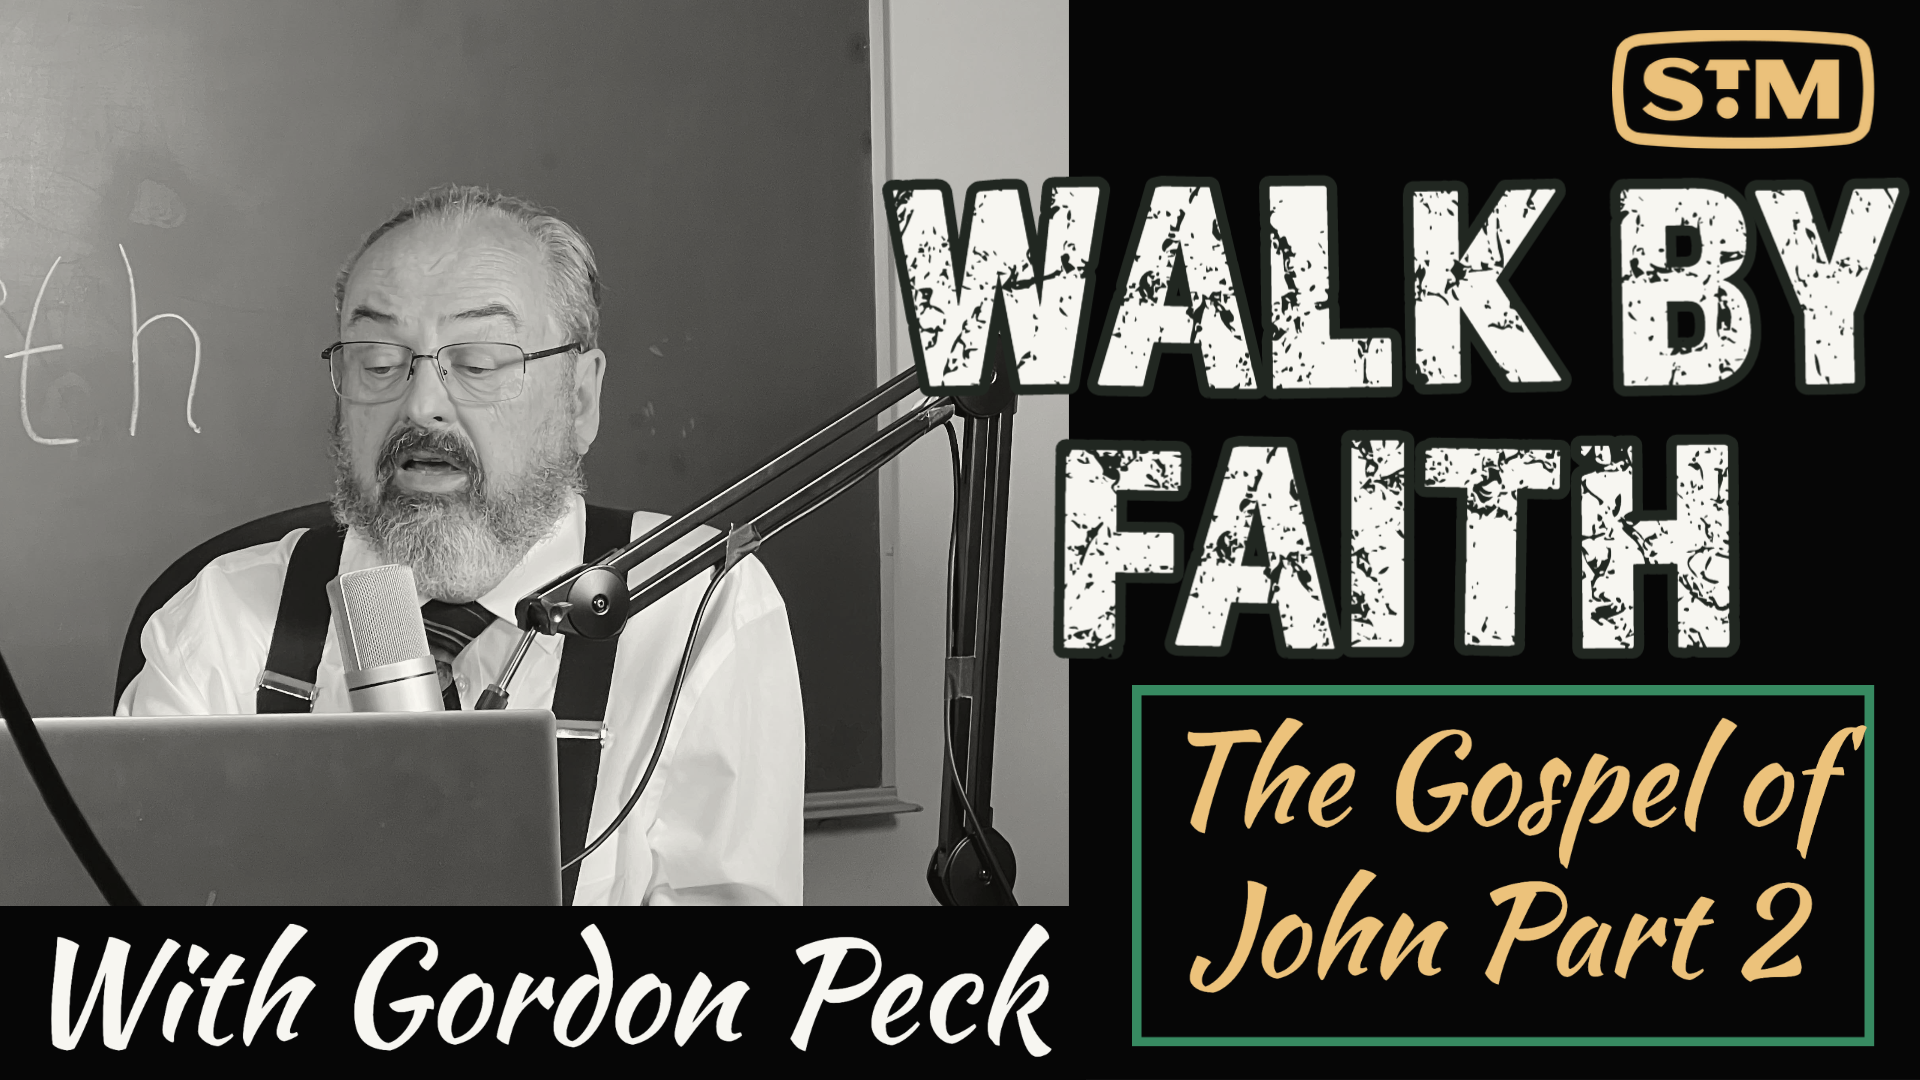 The Gospel of John Part 2